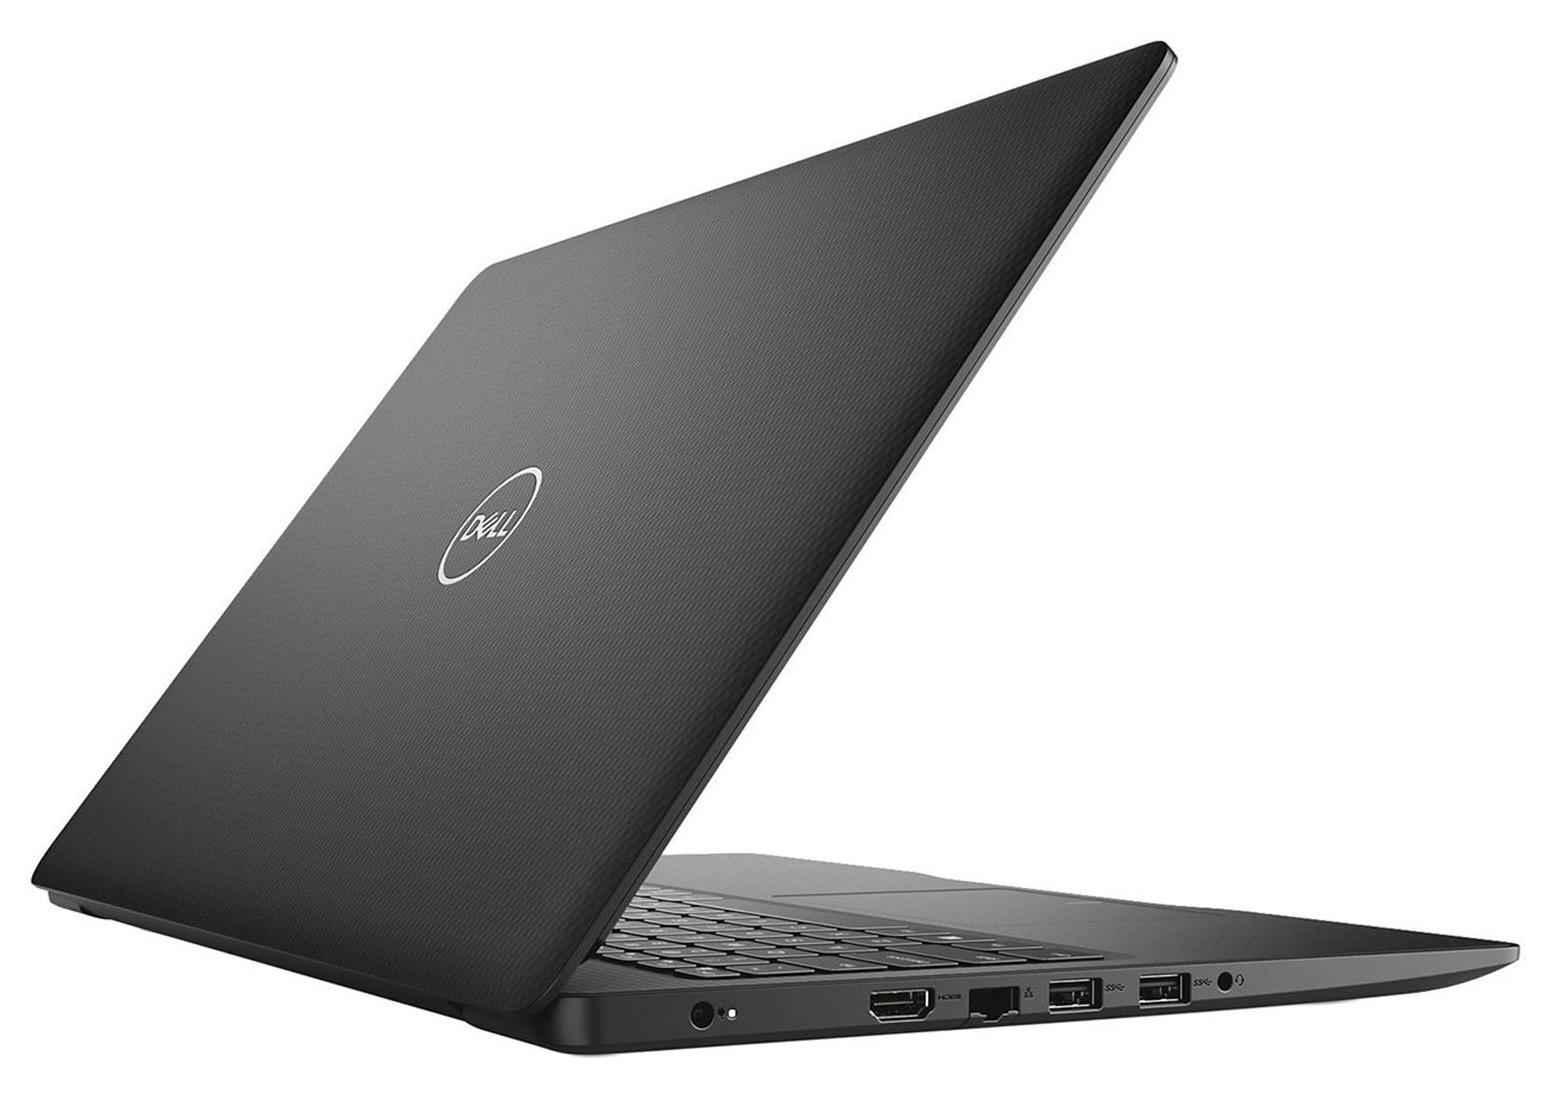 Ноутбук Dell Inspiron 3000.15.6" HD LED Celeron N4205U 4GB DDR4 128GB SSD Win10S noDVD